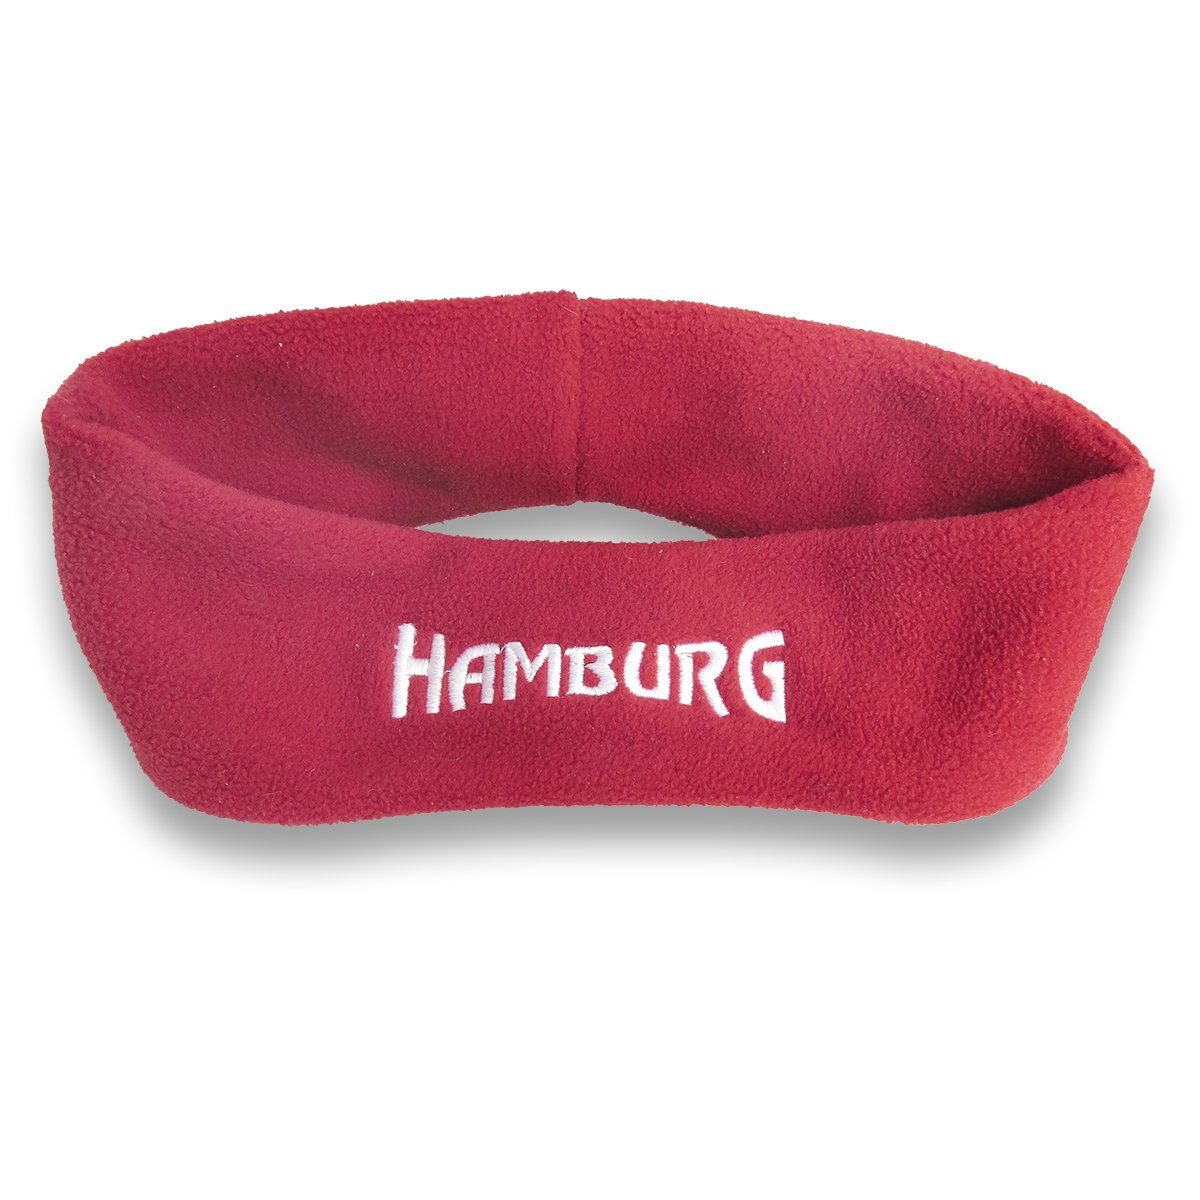 Sonia Originelli Stirnband Stirnband "Hamburg" Fleece weich Marine, kuschelig bestickt Rot